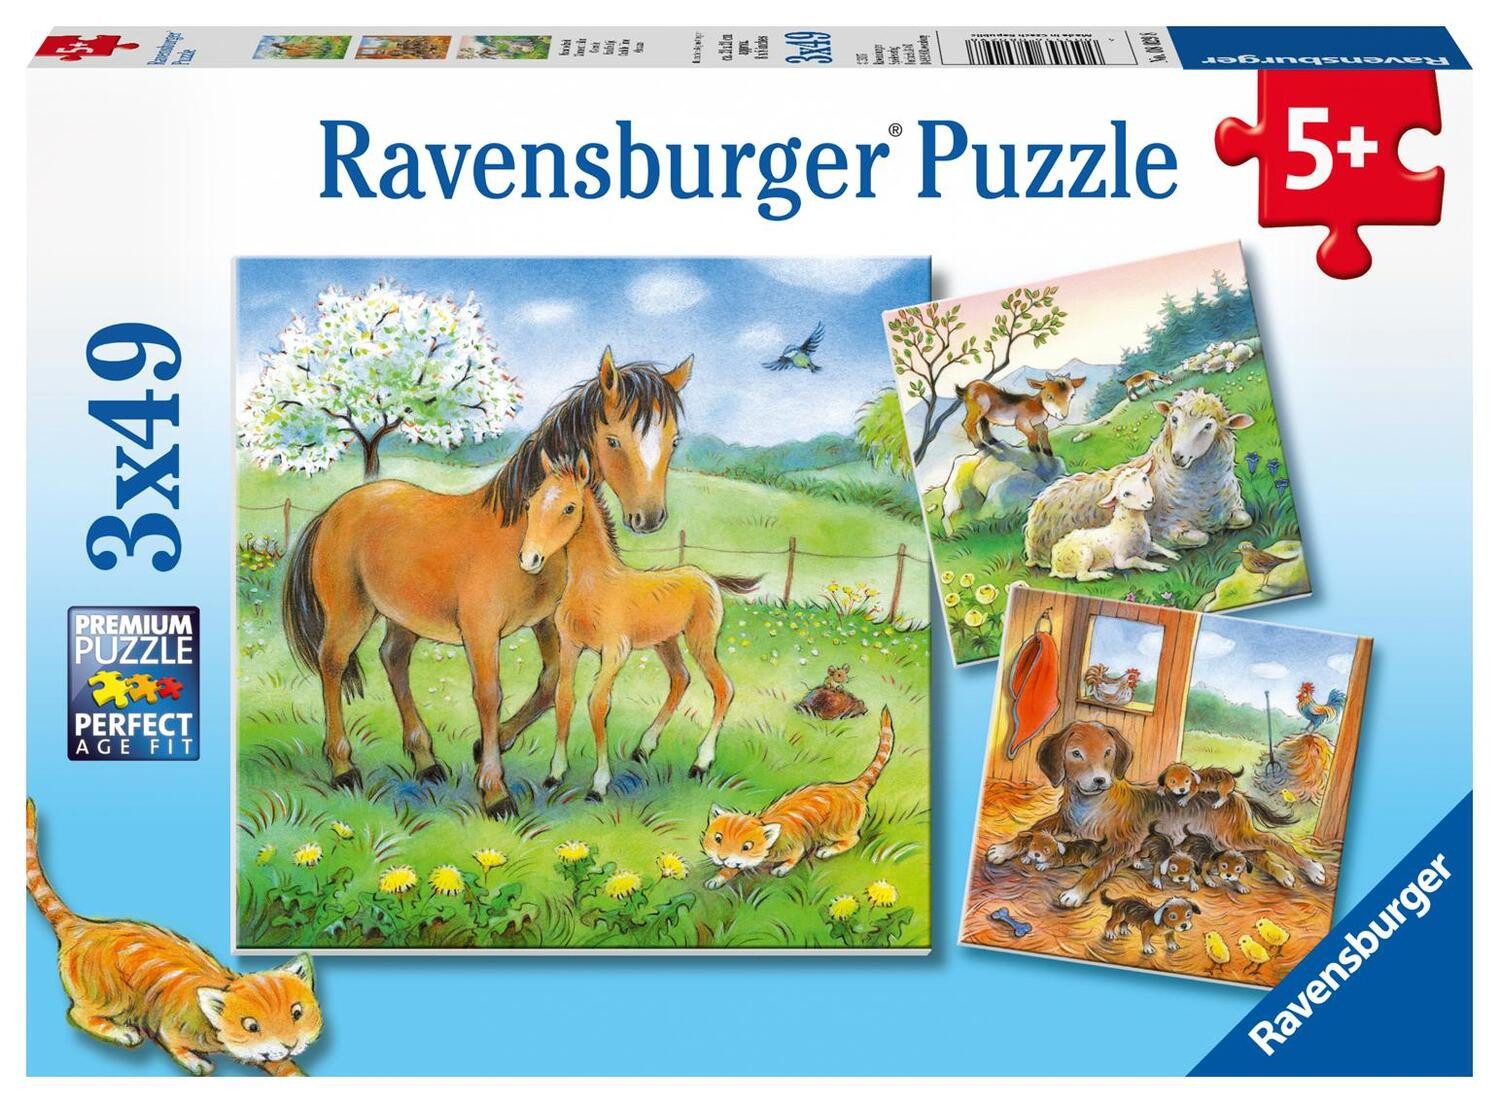 Ravensburger Puzzle Kuschelzeit. Kinderpuzzle 3 x 49 Teile, 49 Puzzleteile